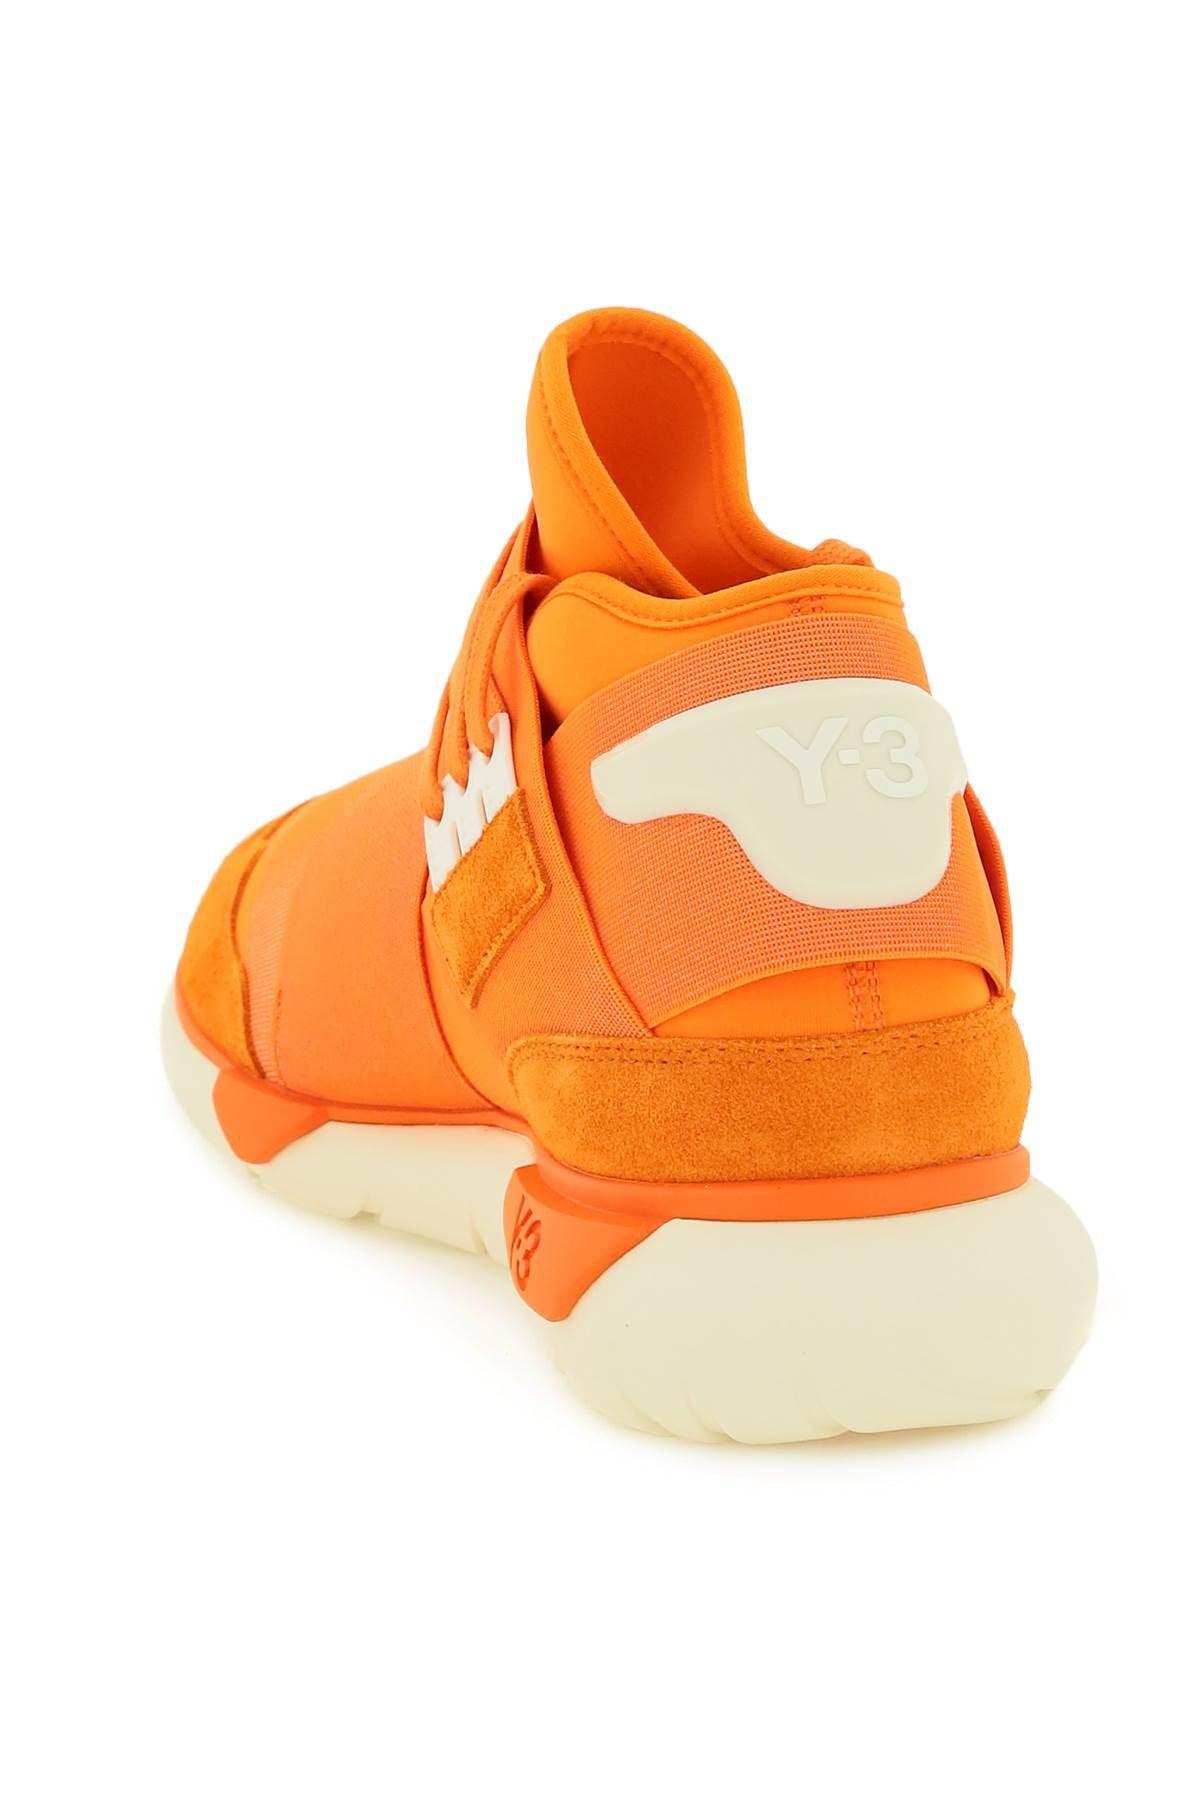 Y-3 Qasa High Sneakers in Orange for Men | Lyst UK